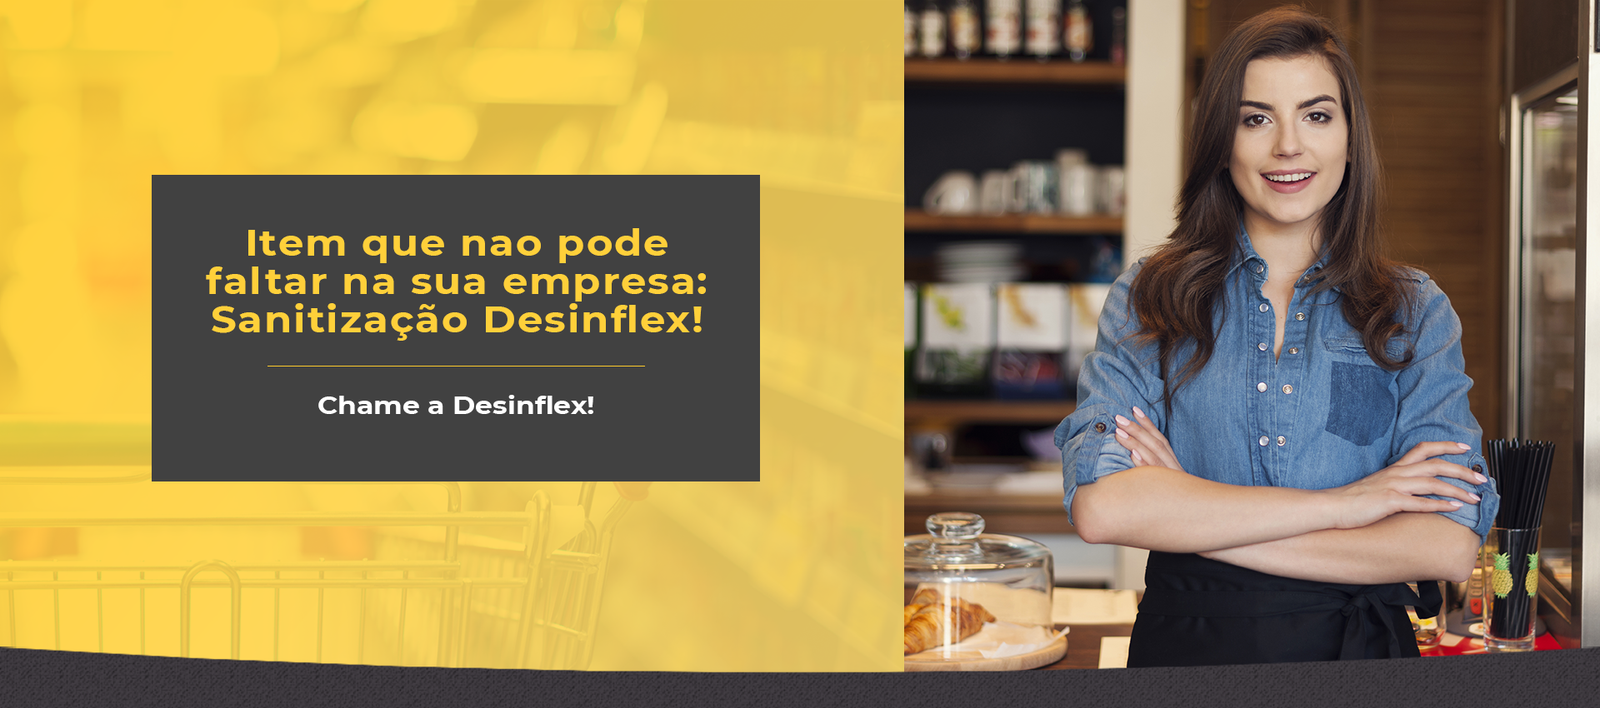 desinflex-sanitizacao-empresas